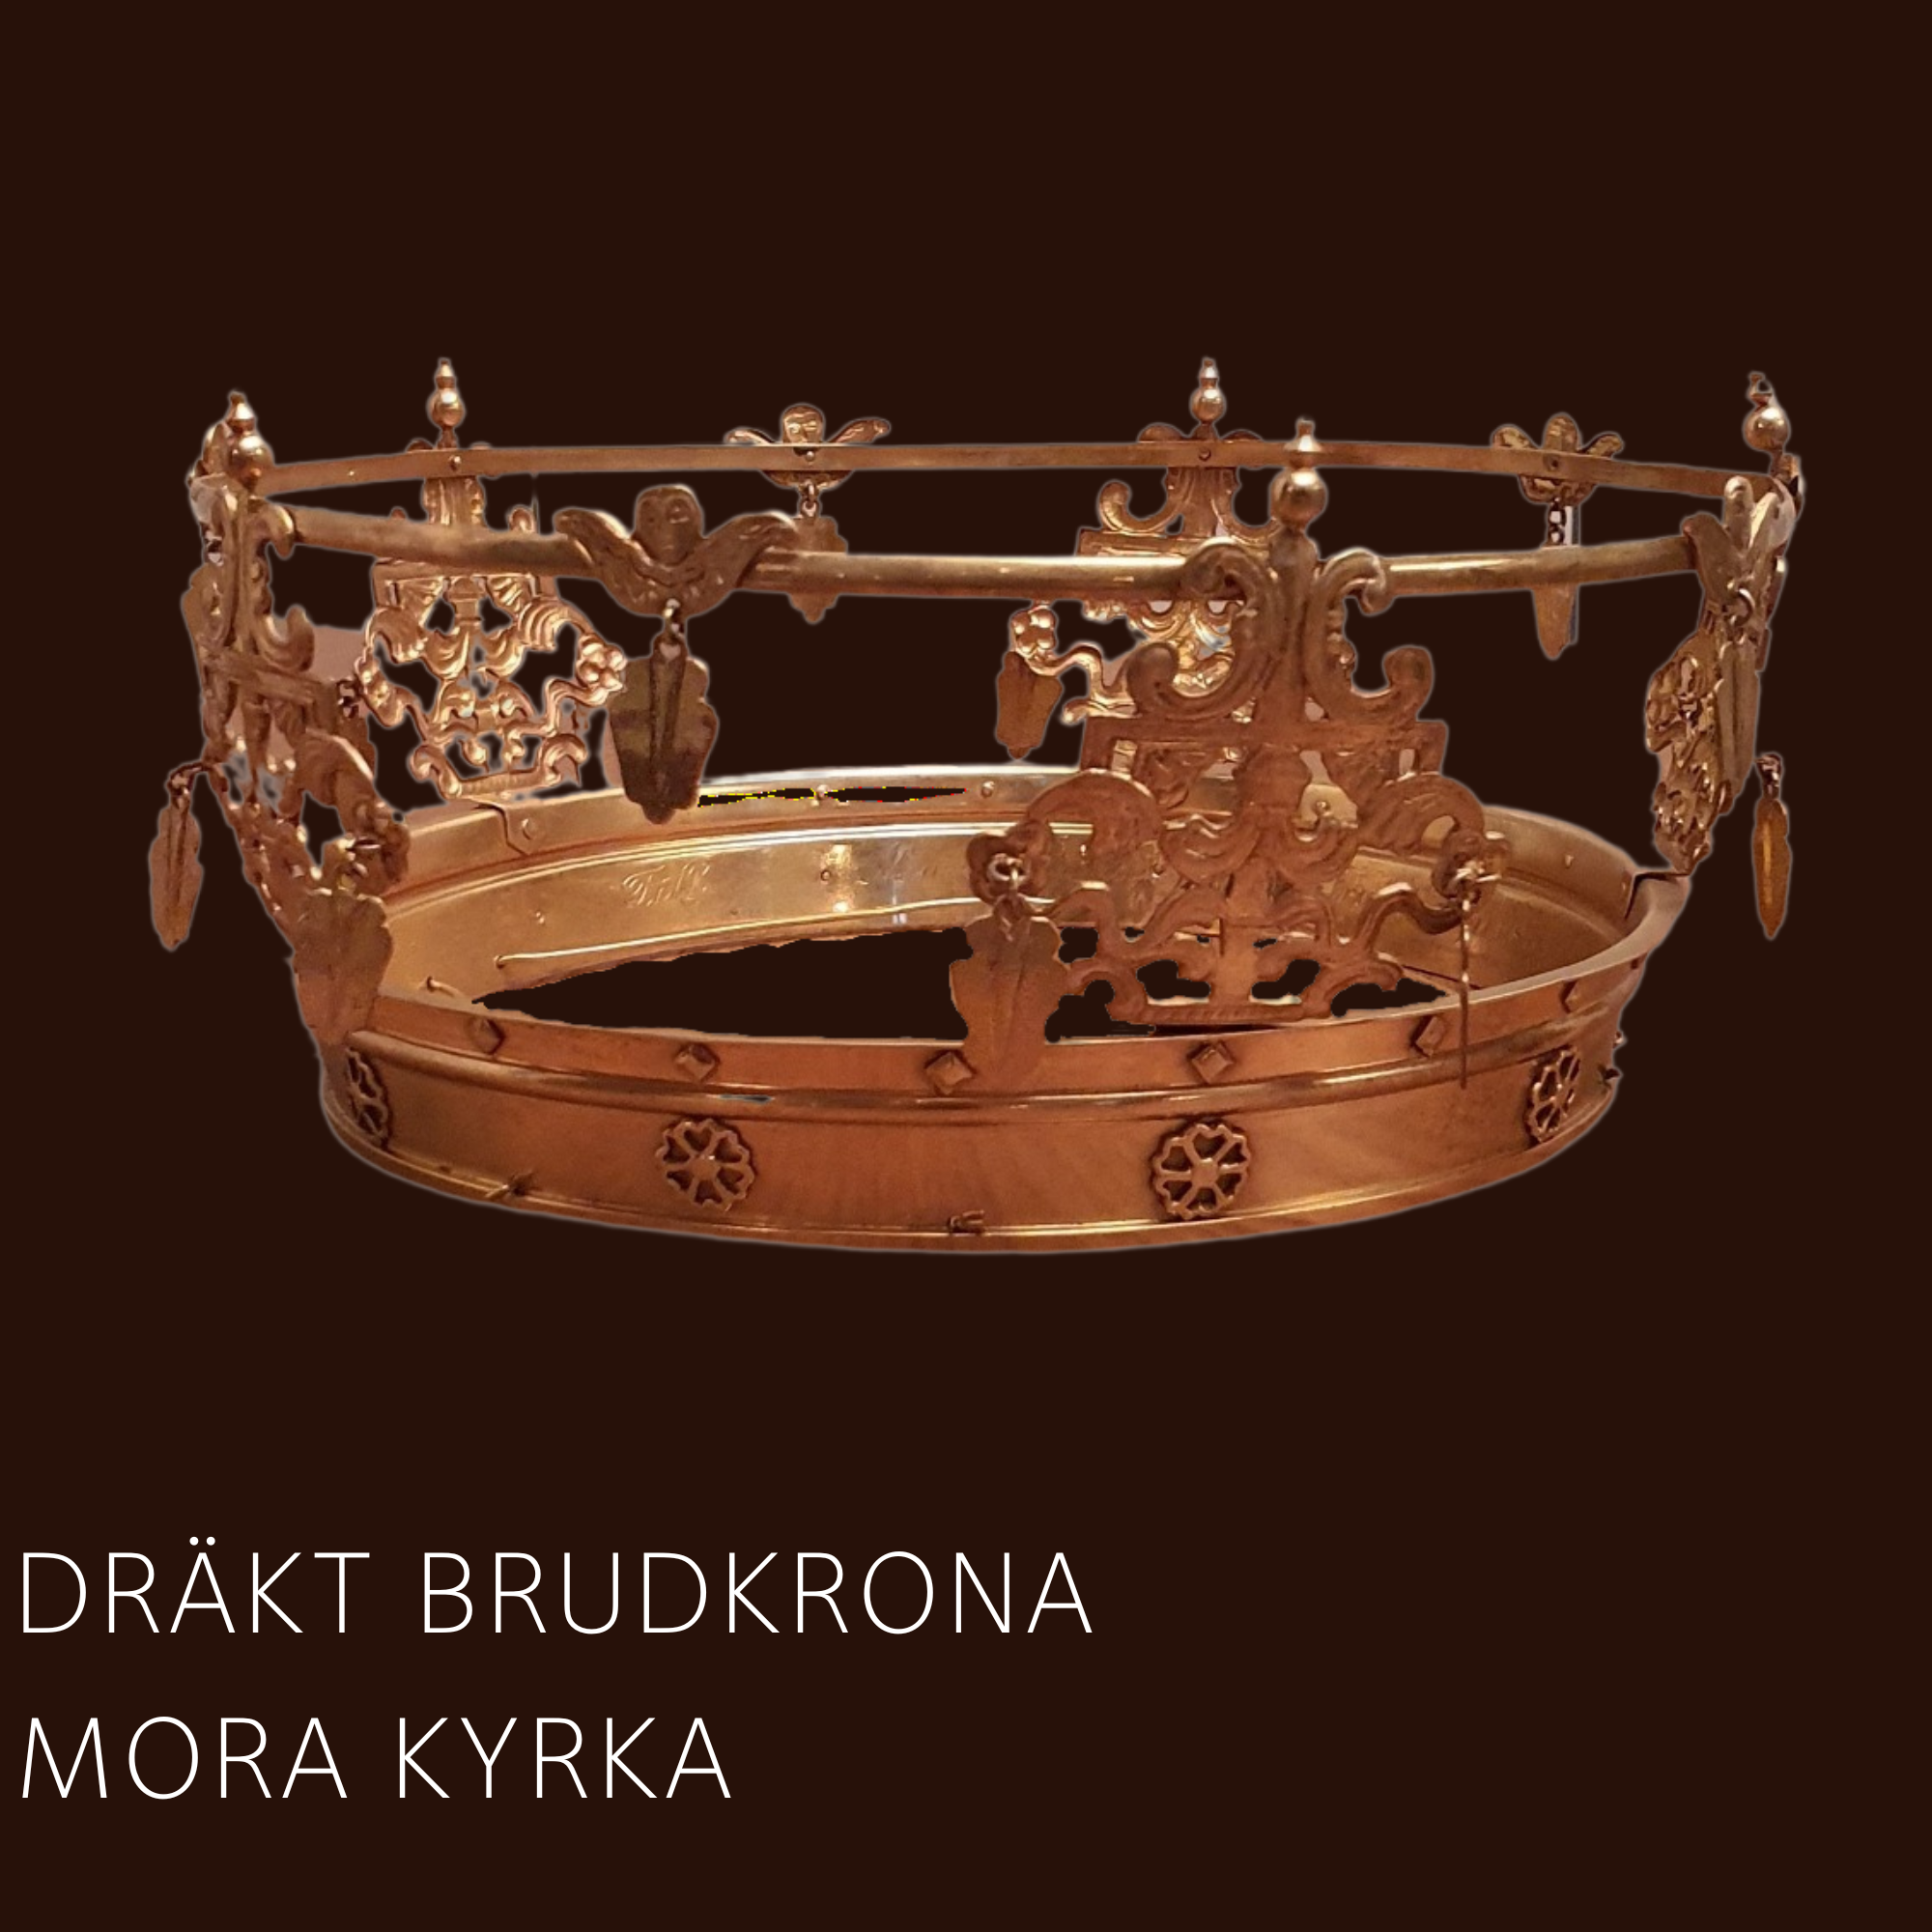 Av förgyllt silver tillverkad av Johan August Ferngren i Stockholm 1923.  Höjd 10 cm , ringens diameter är 19,5cm Kronan är avsedd att bäras till sockendräkt.